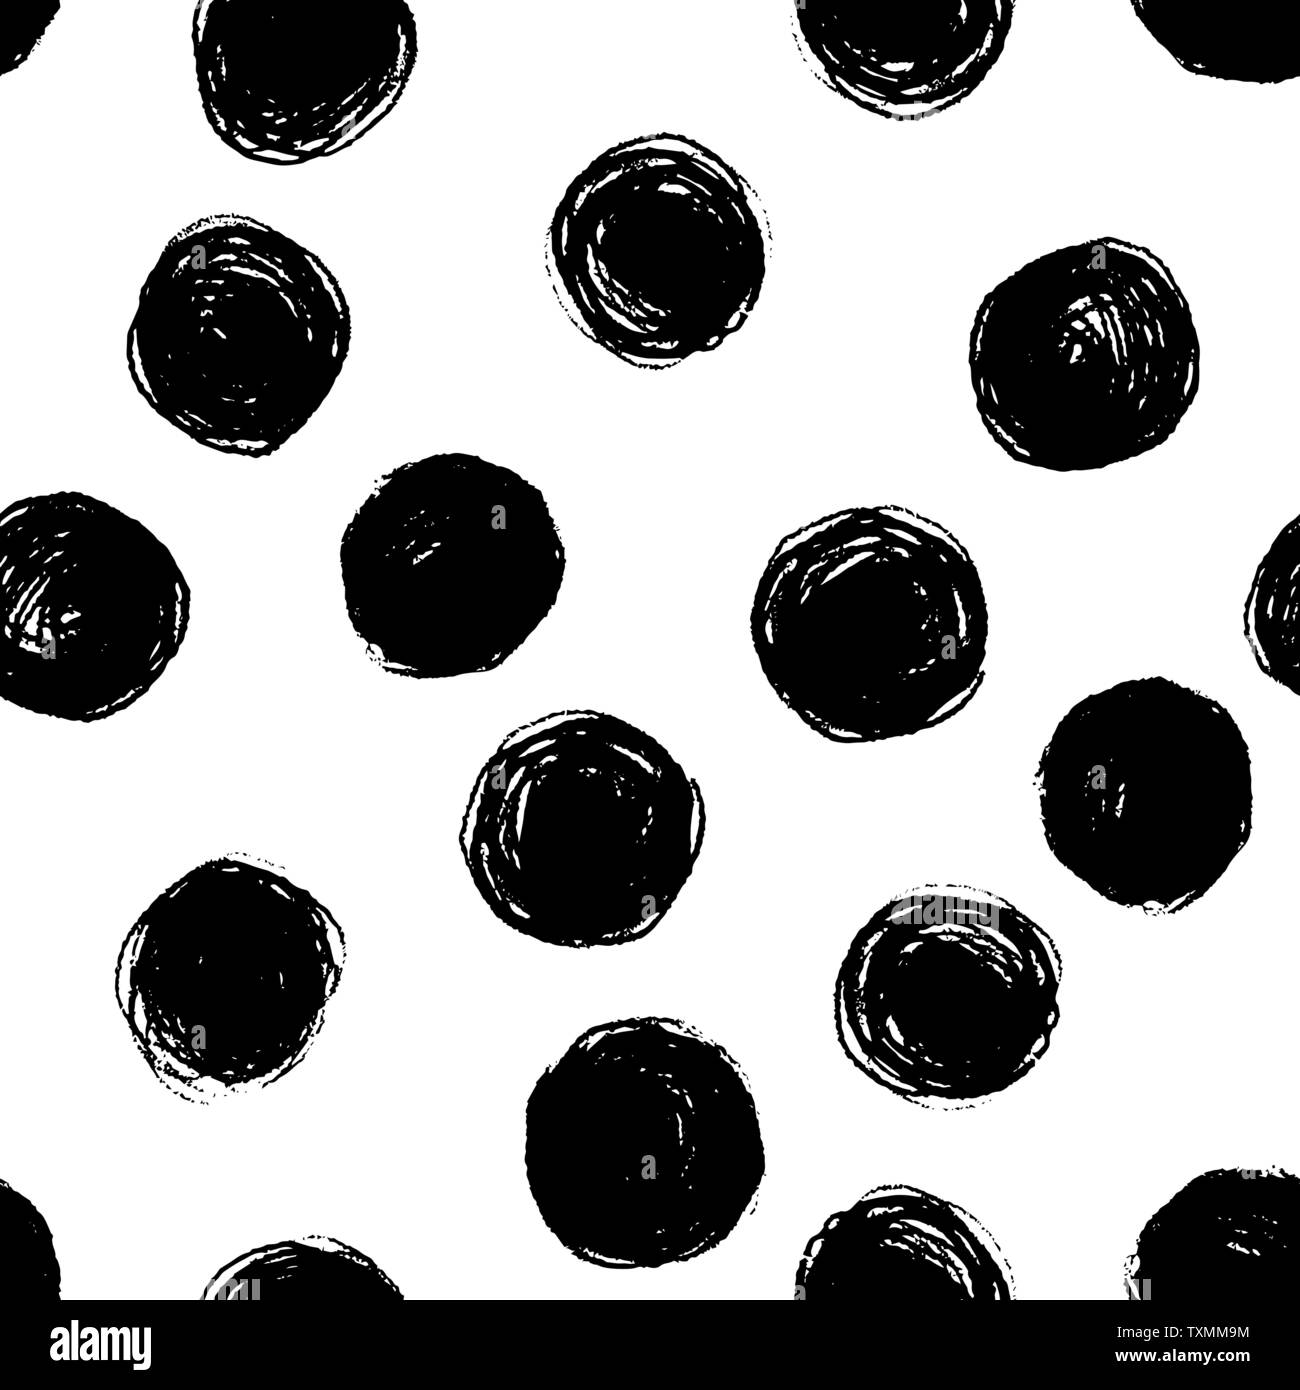 Vektor nahtlose Hand zeichnen Polka Dot Bürste schwarz-weißen Muster. Monochrome skandinavischen Hintergründe der einfachen Primitiven mit Punkten für textile Desig Stock Vektor